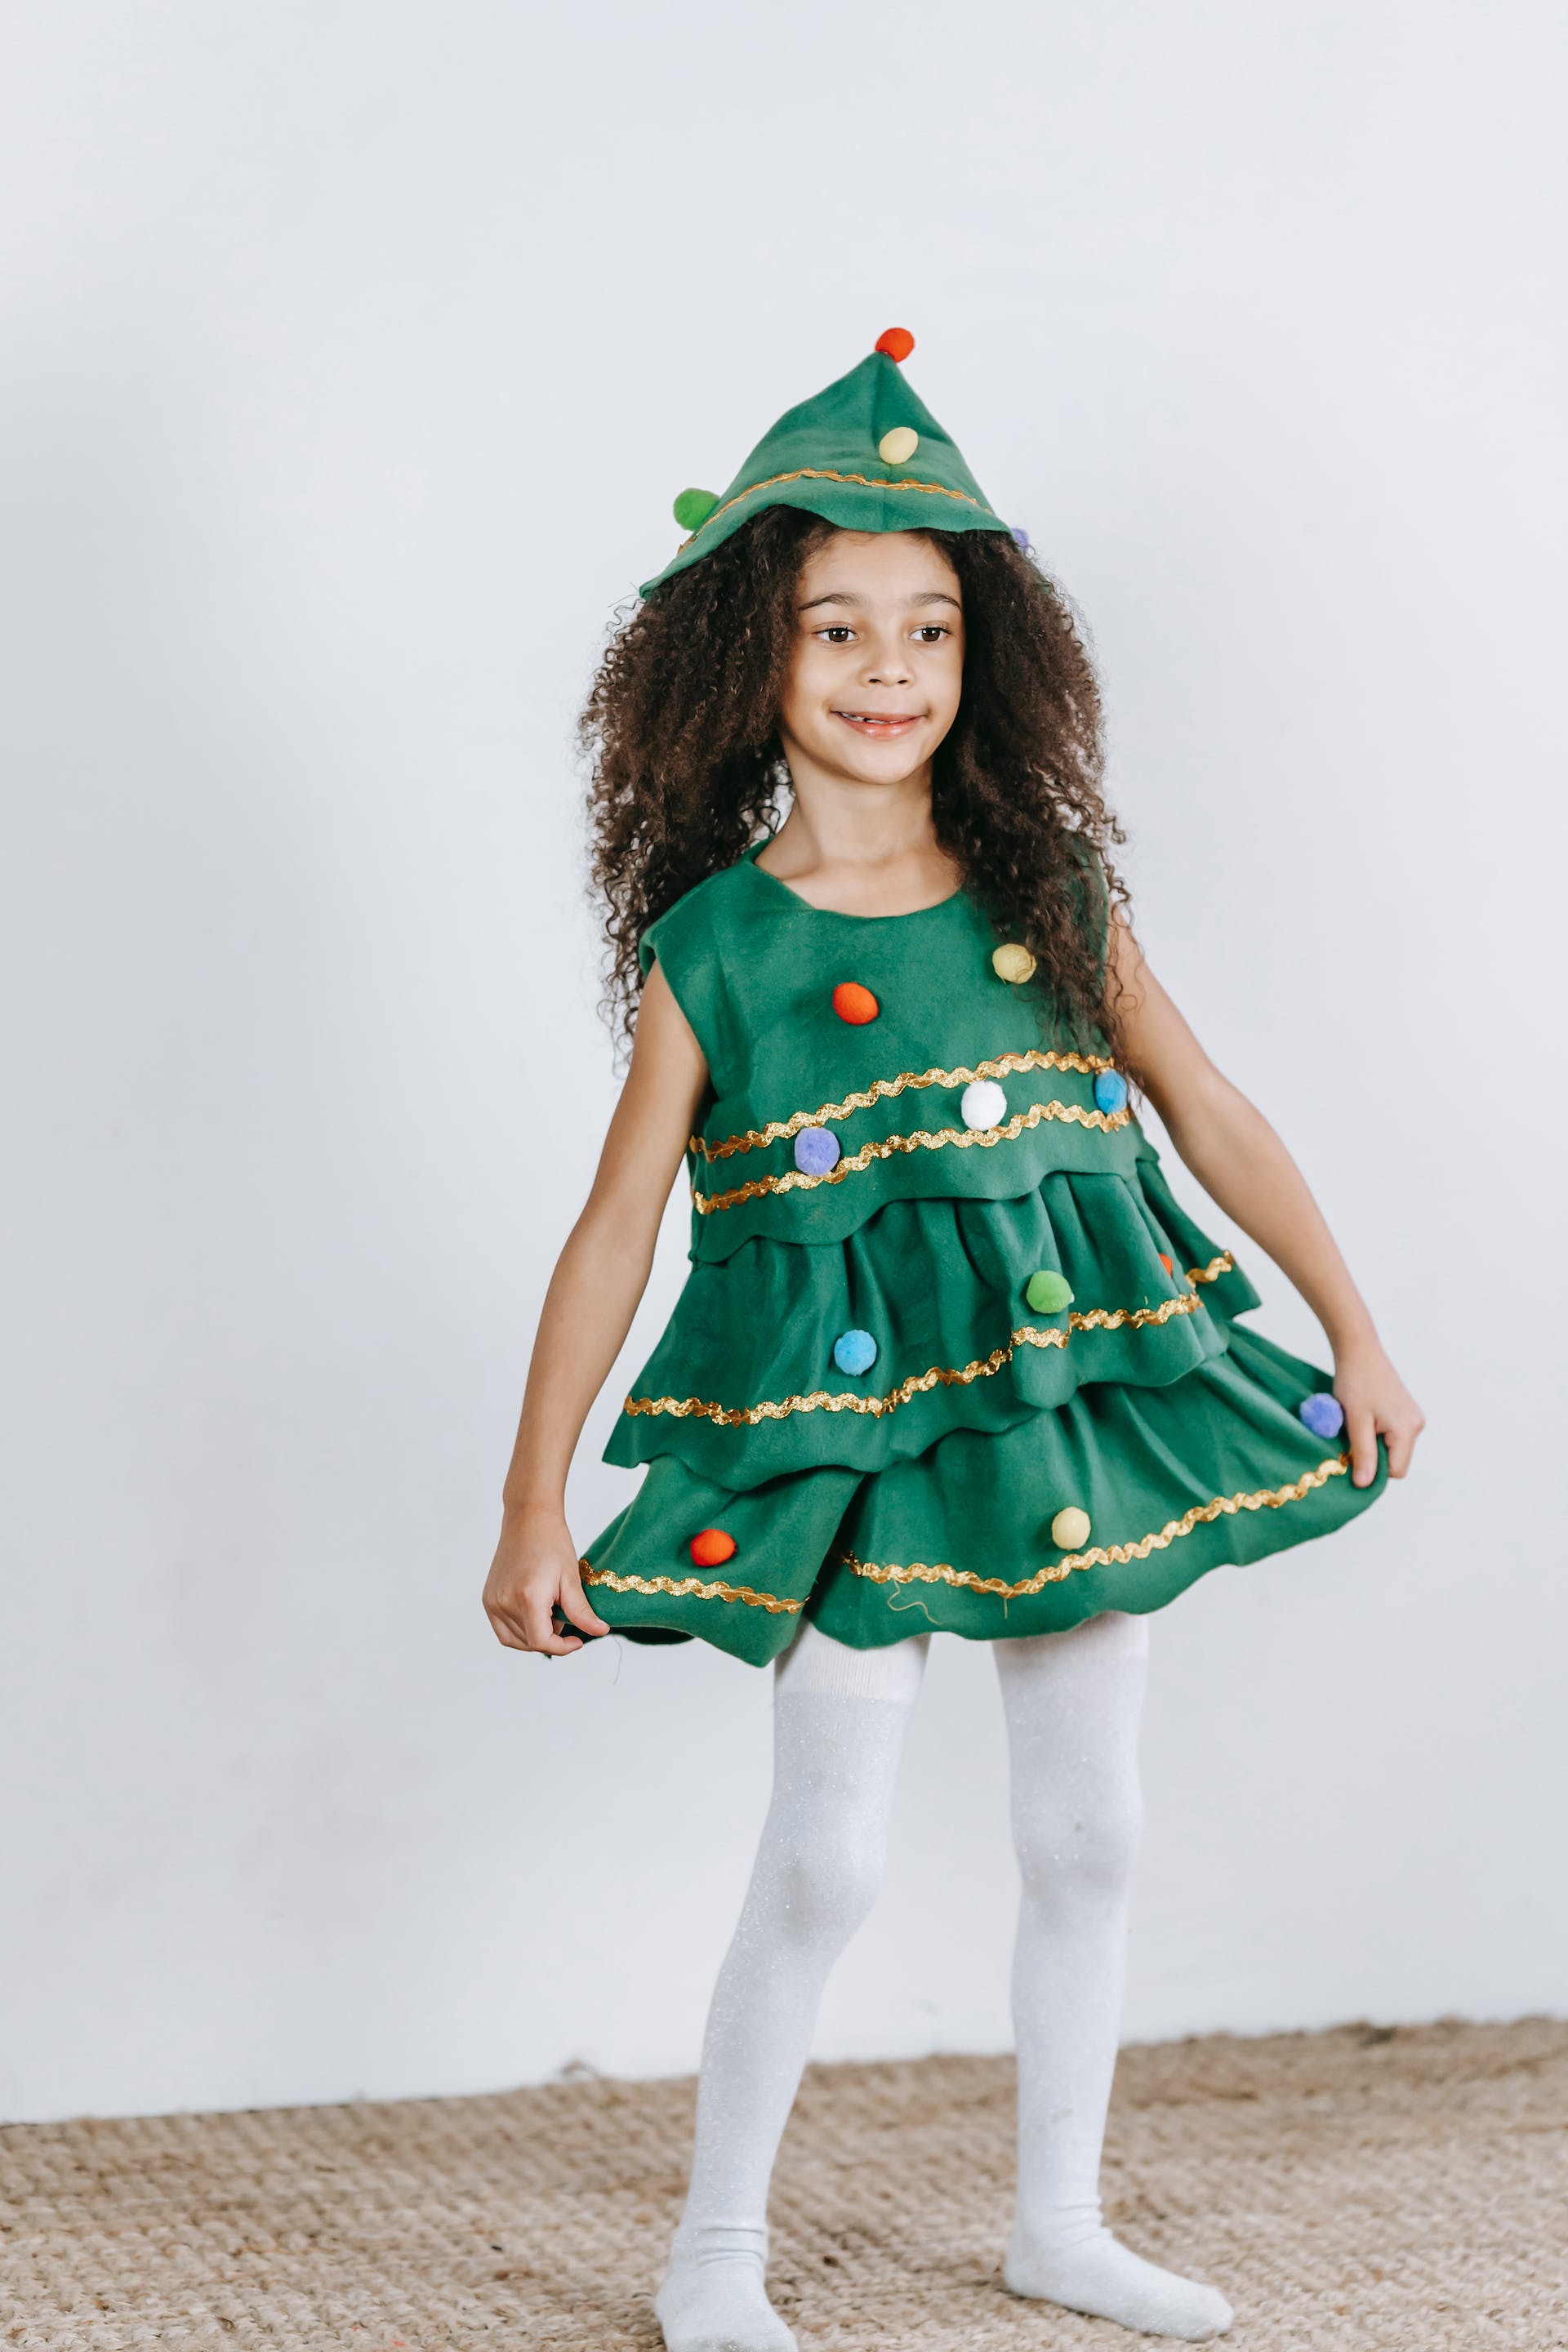 Une petite fille portant un costume de sapin de Noël | Source : Pexels